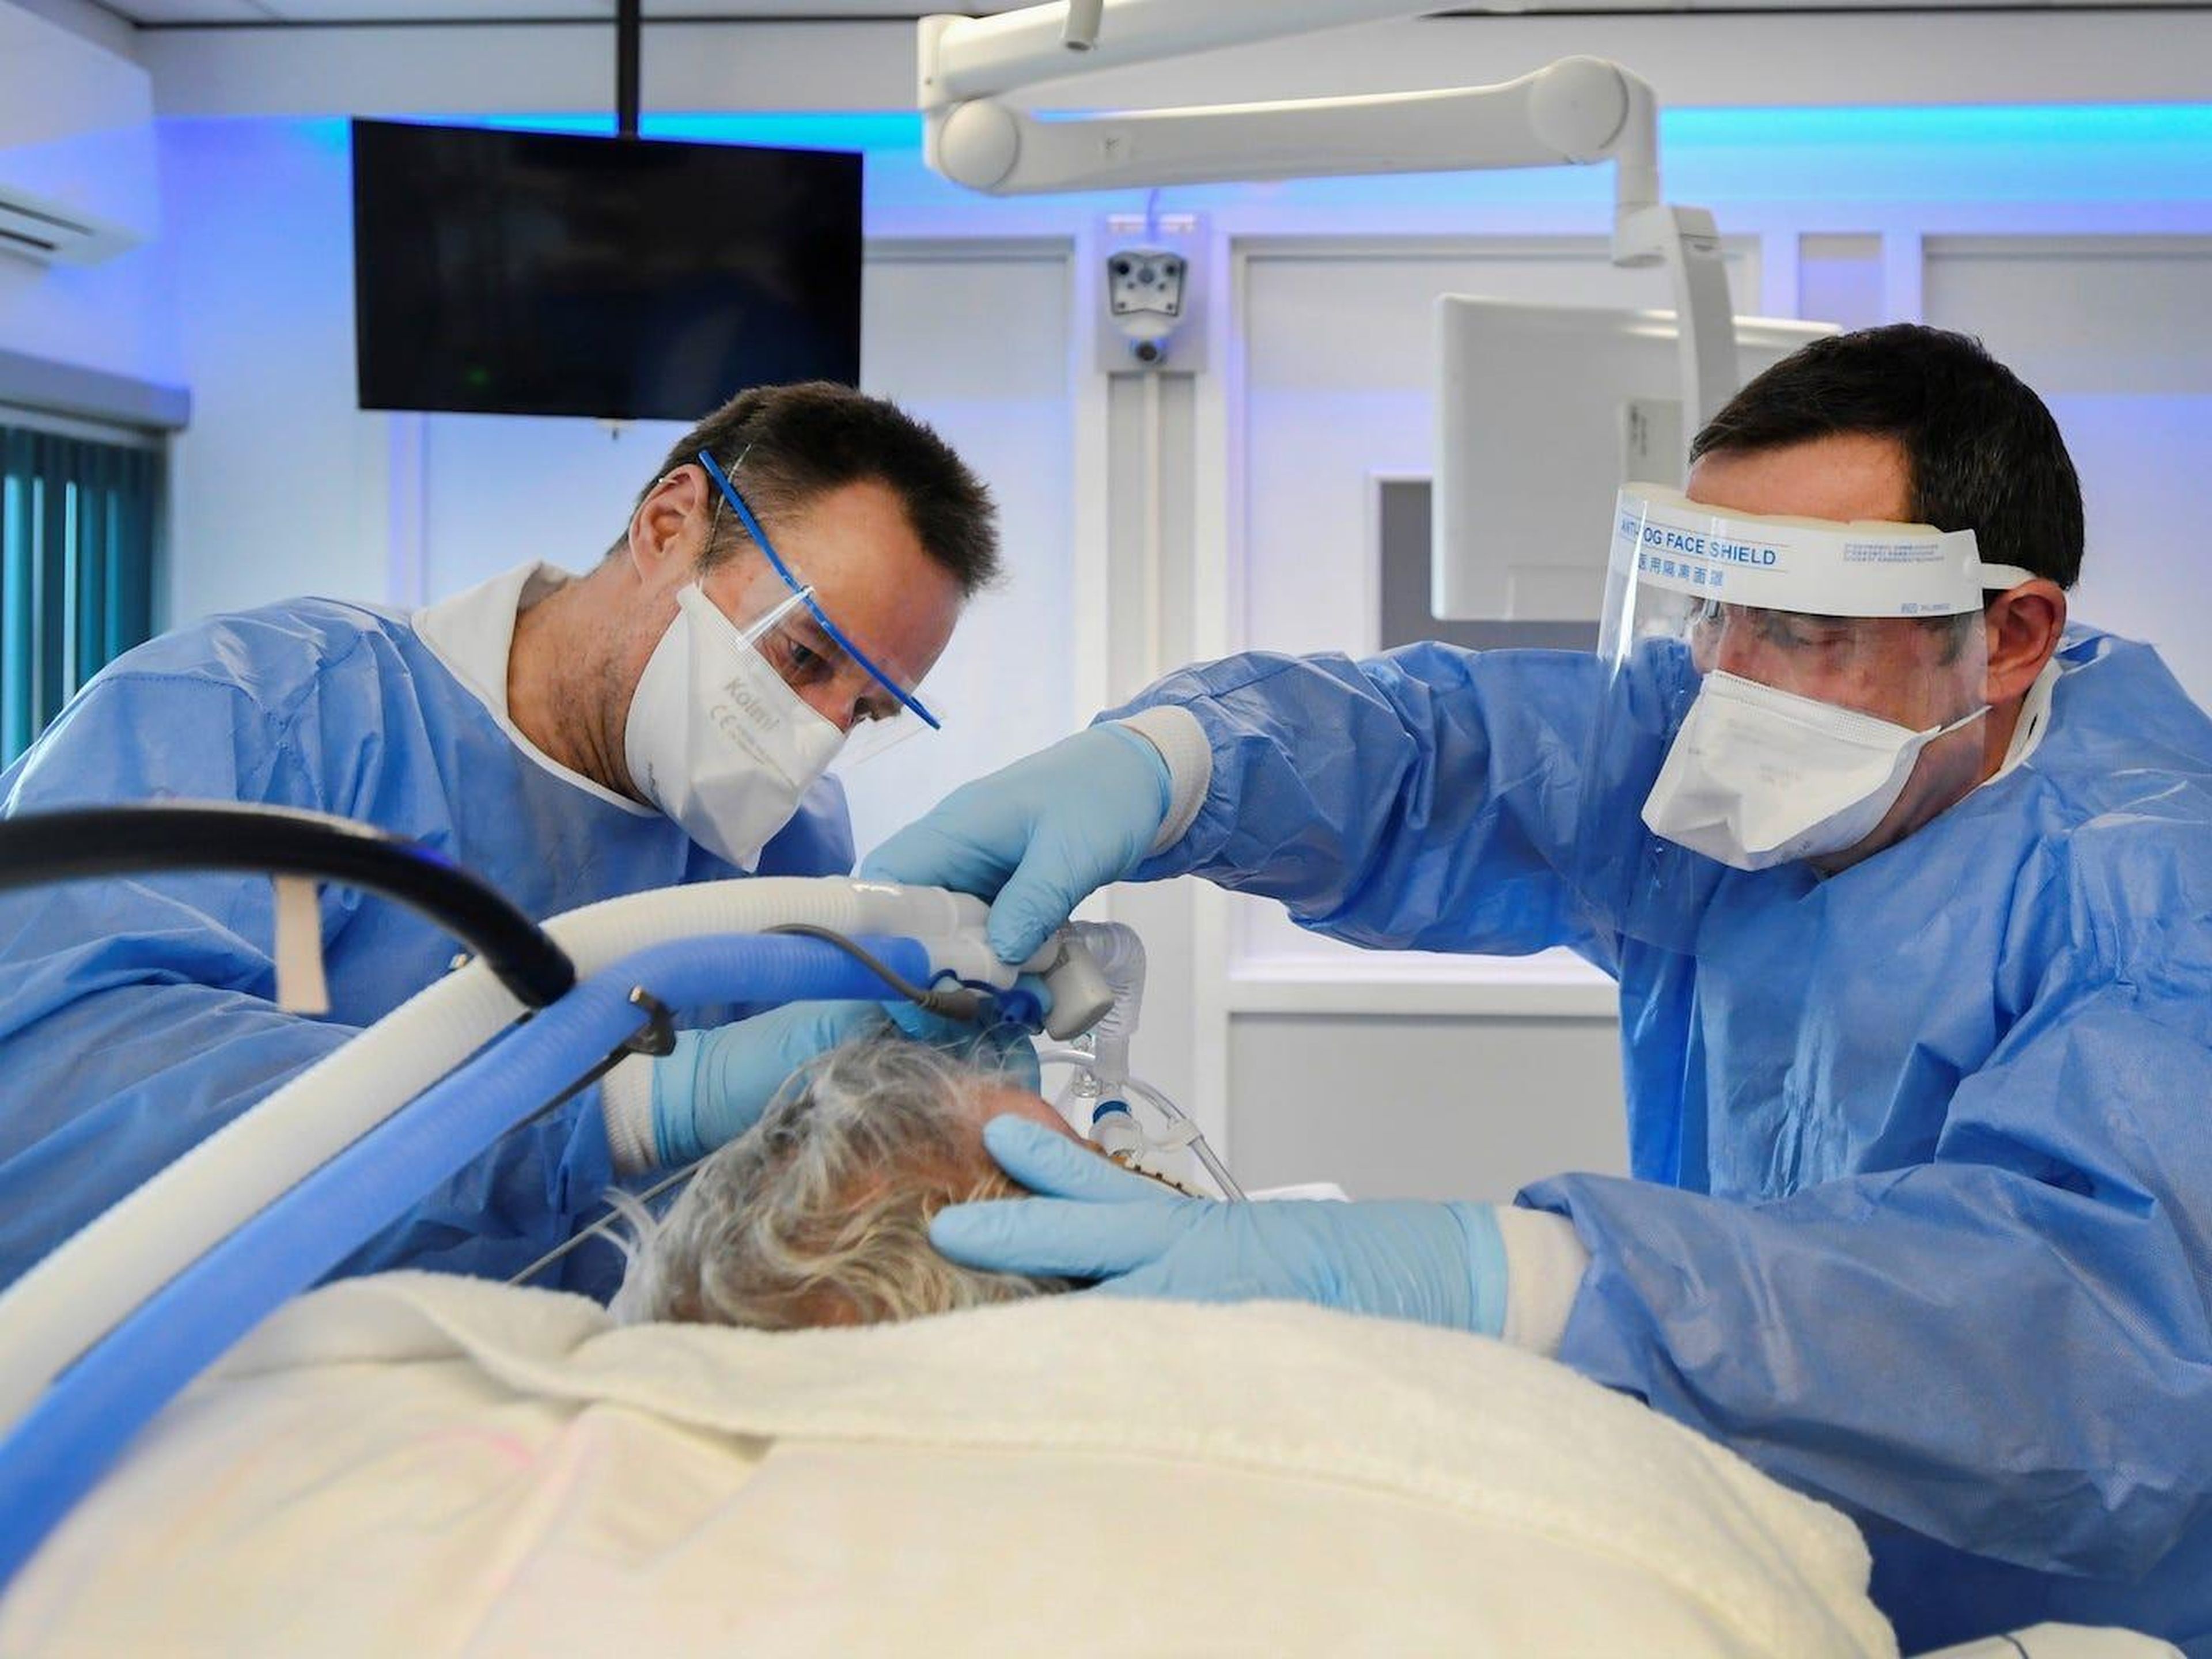 El personal médico que lleva trajes de protección completa es visto mientras trata a un paciente infectado con el coronavirus en la UCI en el UMC+ de Maastricht, Holanda, el 10 de noviembre de 2020.